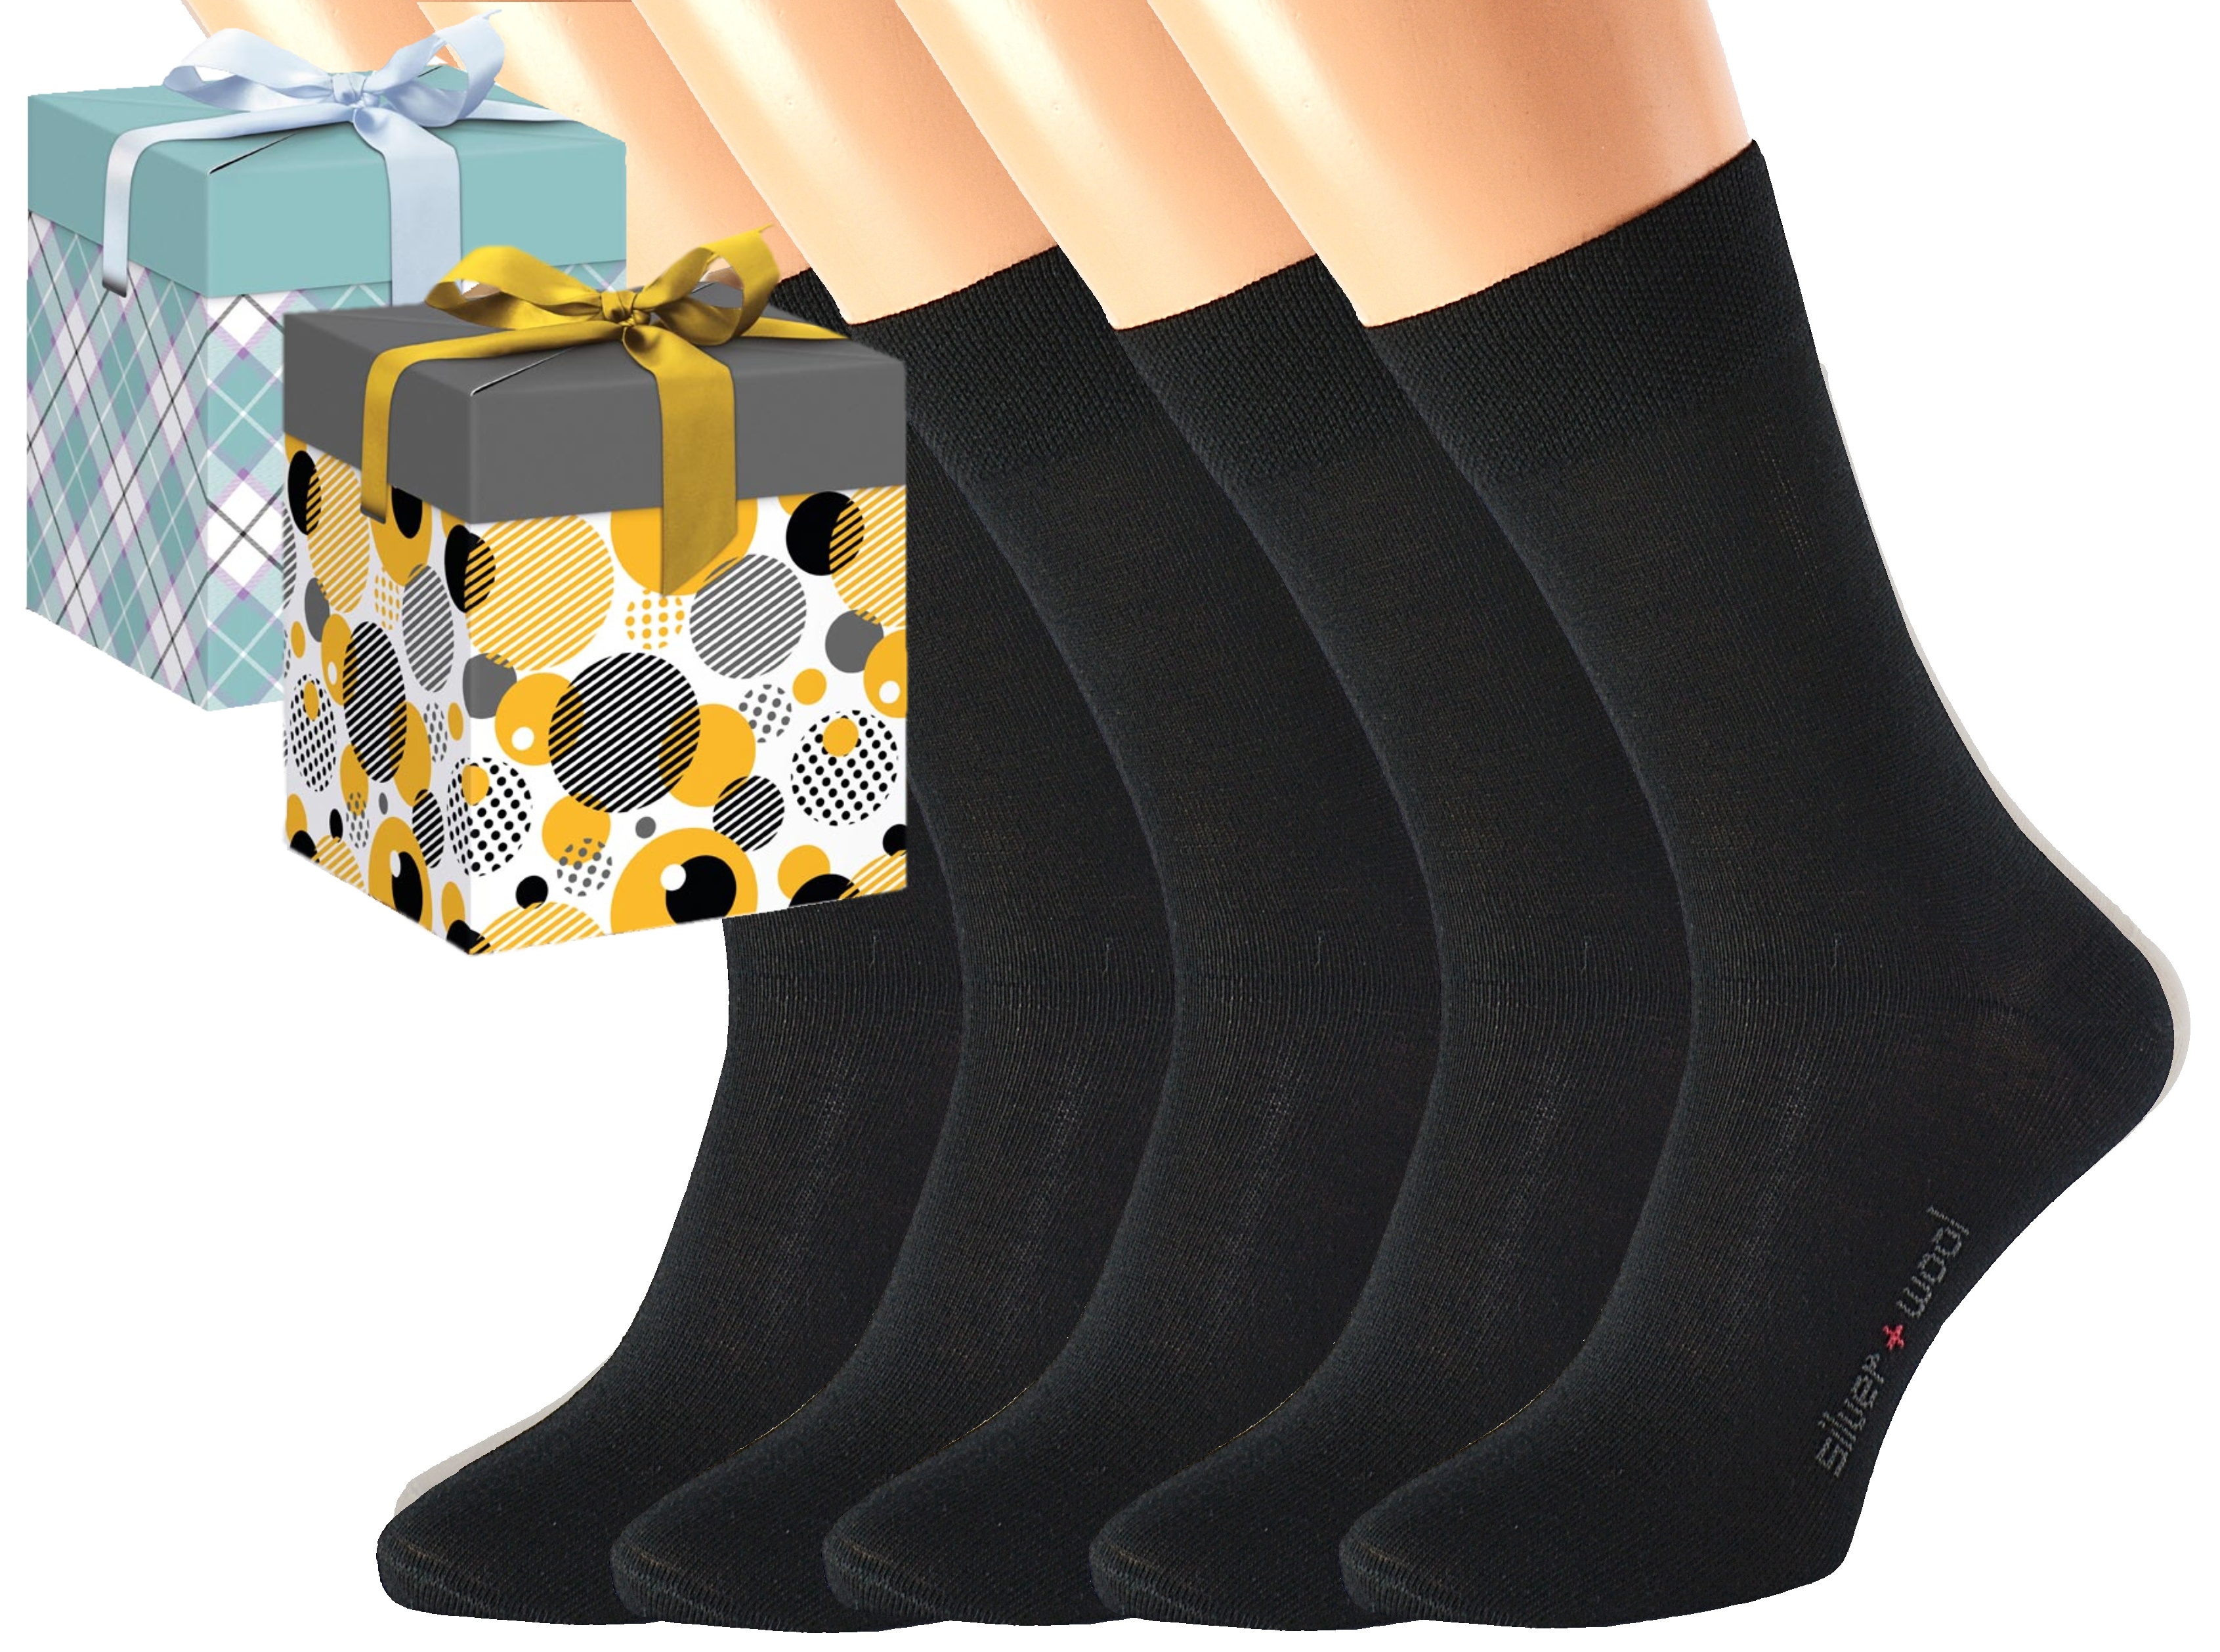 Dárkové balení 5 párů vlněných ponožek DAVID Barva: Černé, Velikost: EUR 43-45 (UK 9-10), Zvolte variantu dárkového balení: Mint kostkovaná